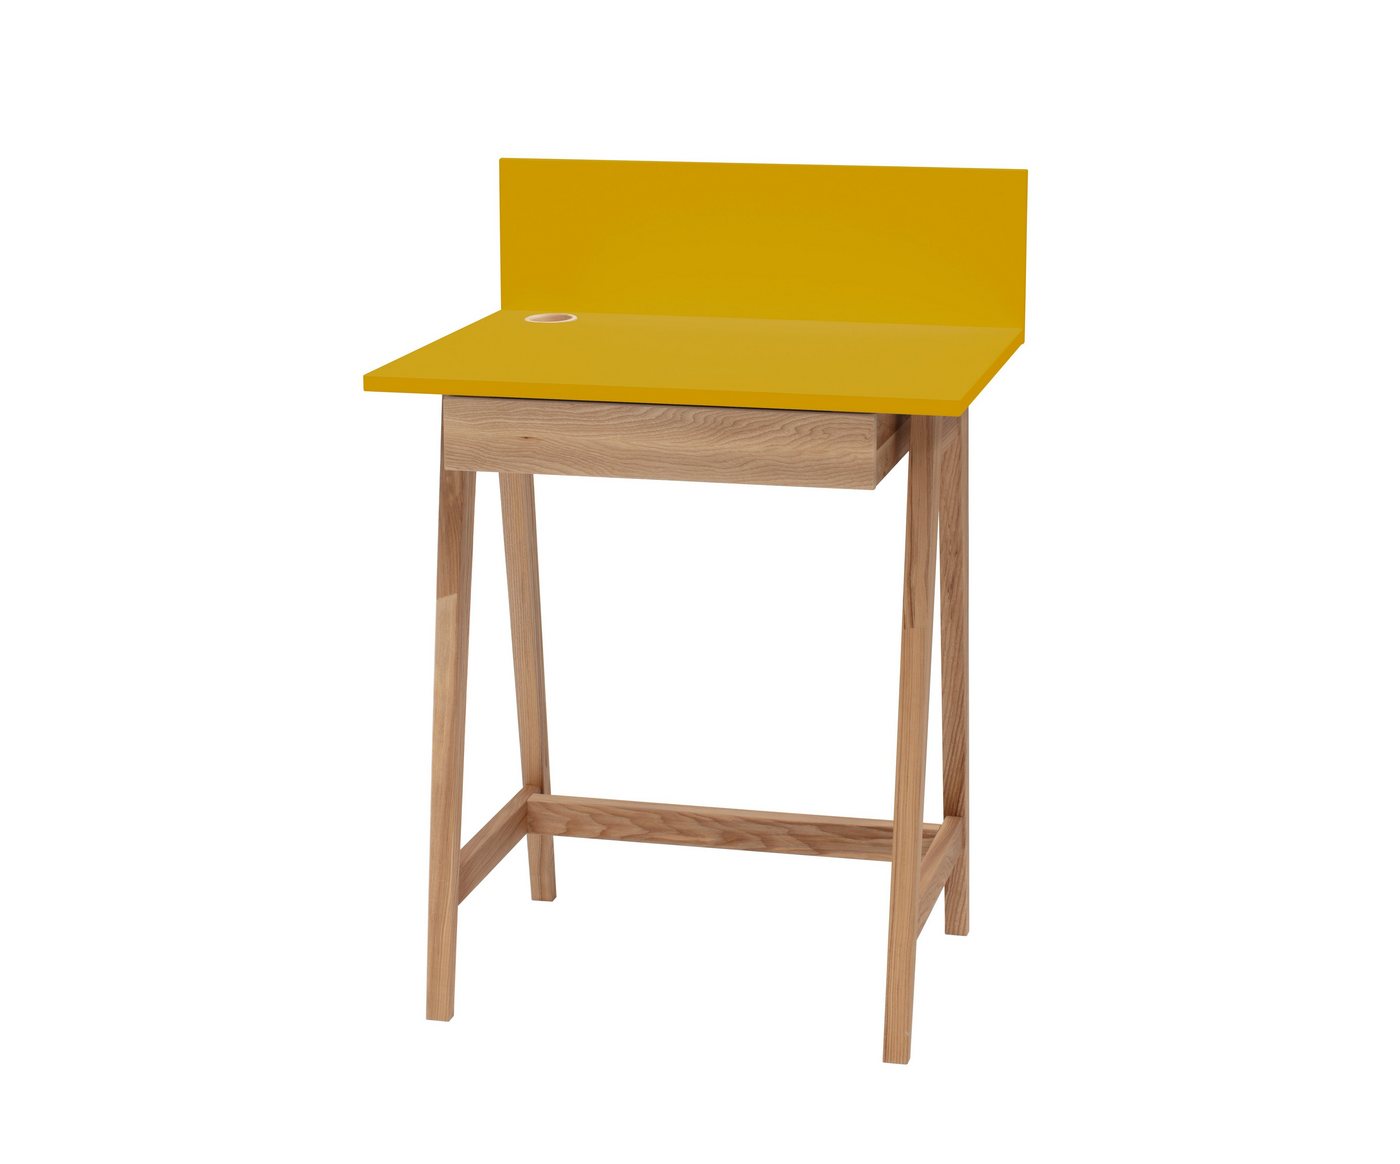 Siblo Schreibtisch Kinderschreibtisch Luke mit Schublade - Bunter Schreibtisch - minimalistisches Design - Kinderzimmer - MDF-Platte - Eschenholz (Kinderschreibtisch Luke mit Schublade) von Siblo